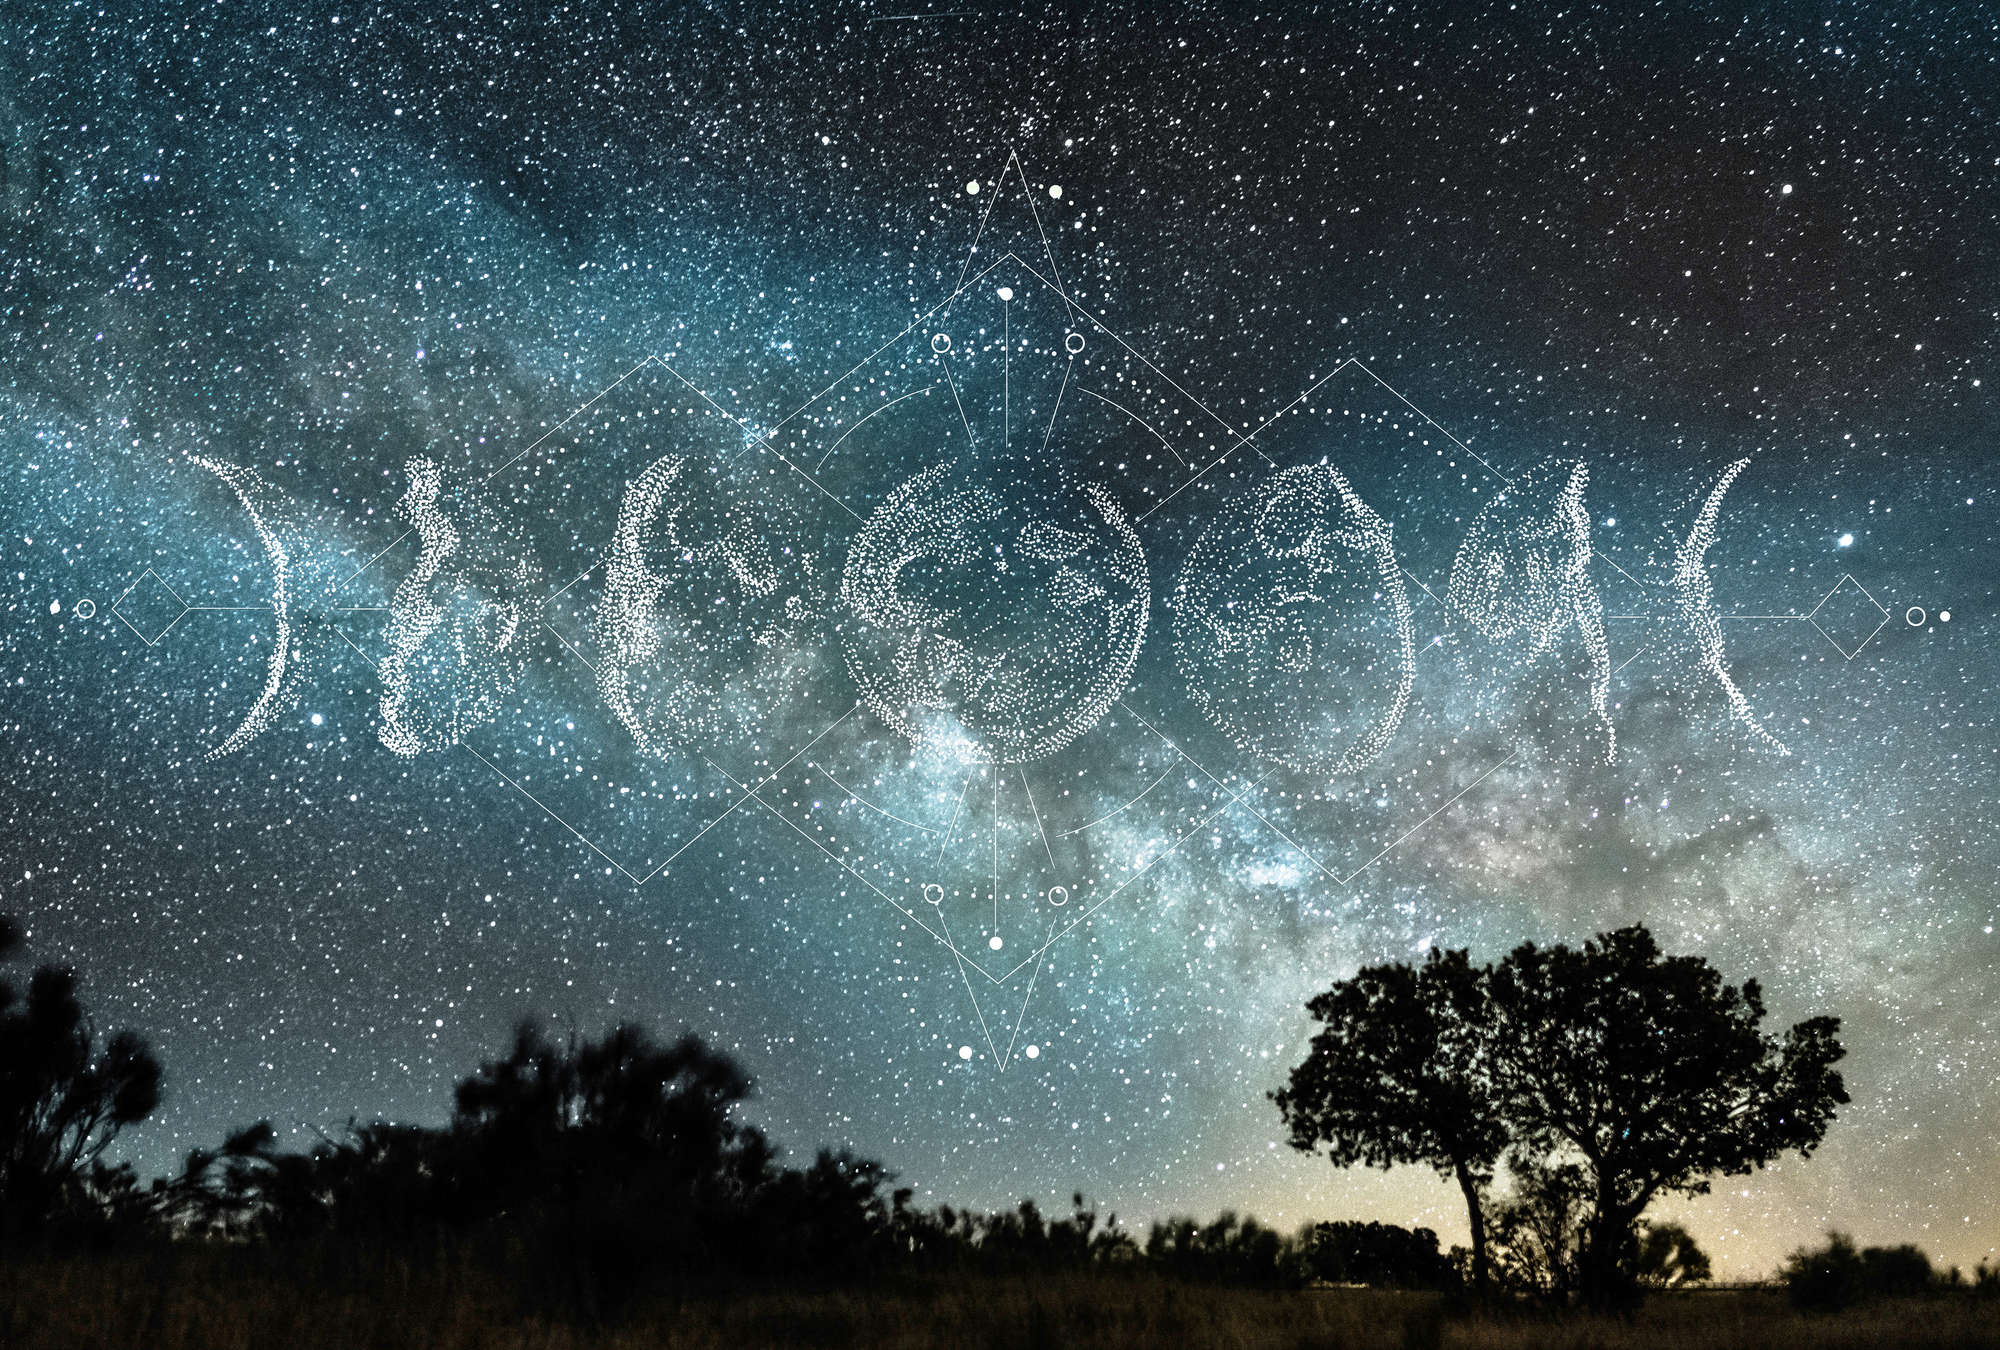             Fototapete Nachthimmel, Milchstraße & Mondphasen – Blau, Weiß, Schwarz
        